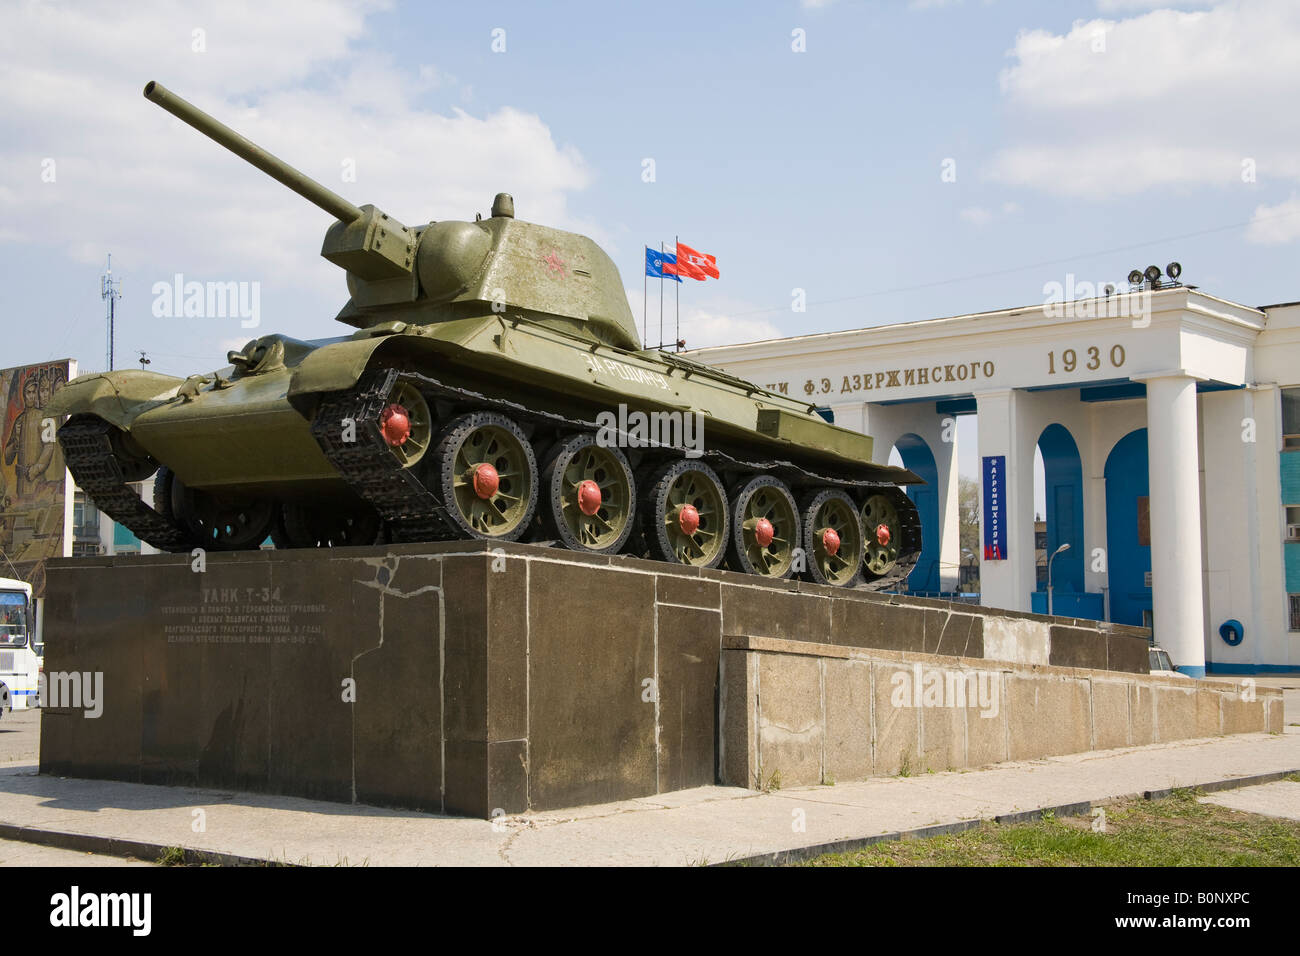 Réservoir T-34 soviétique, en face de l'usine de tracteurs de Dzerjinsky, Volgograd (ex-Stalingrad), Russie, Fédération de Russie Banque D'Images